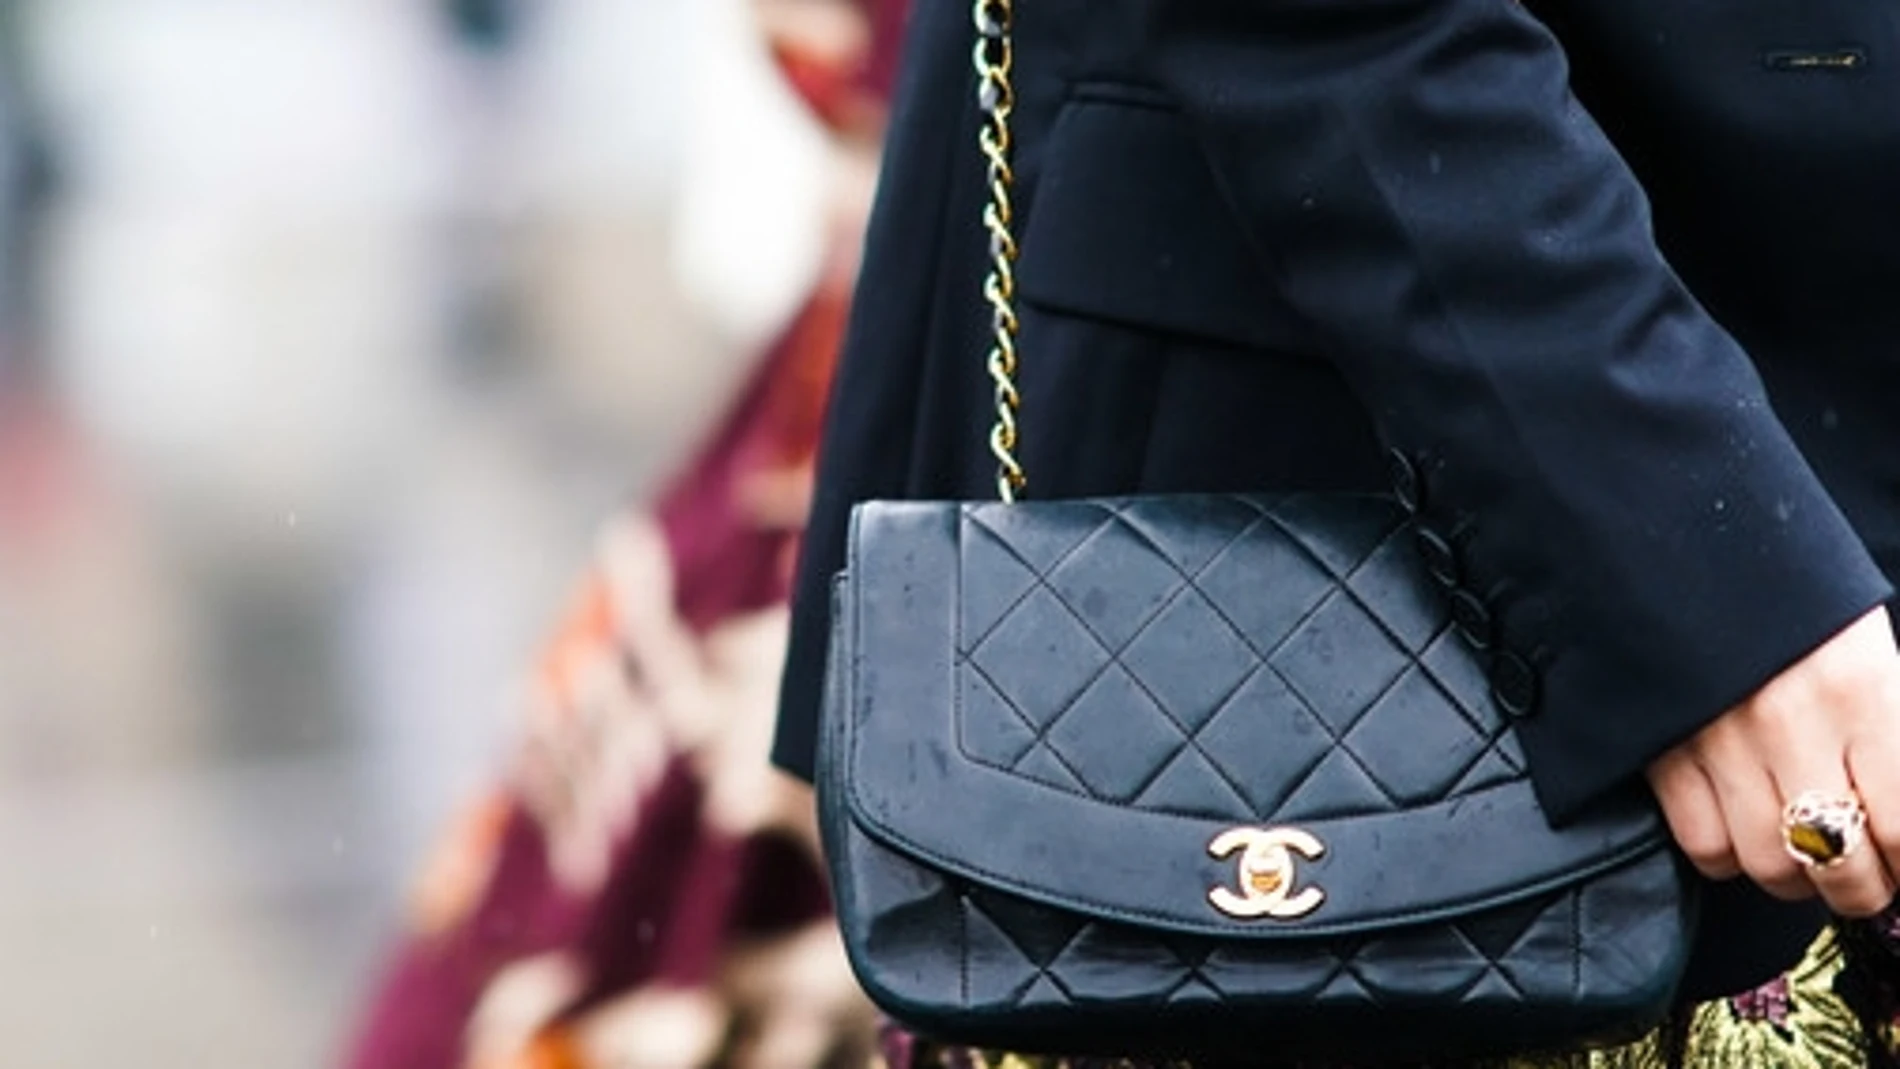 Chanel limita la compra de un bolso por cliente al año - HIGHXTAR.